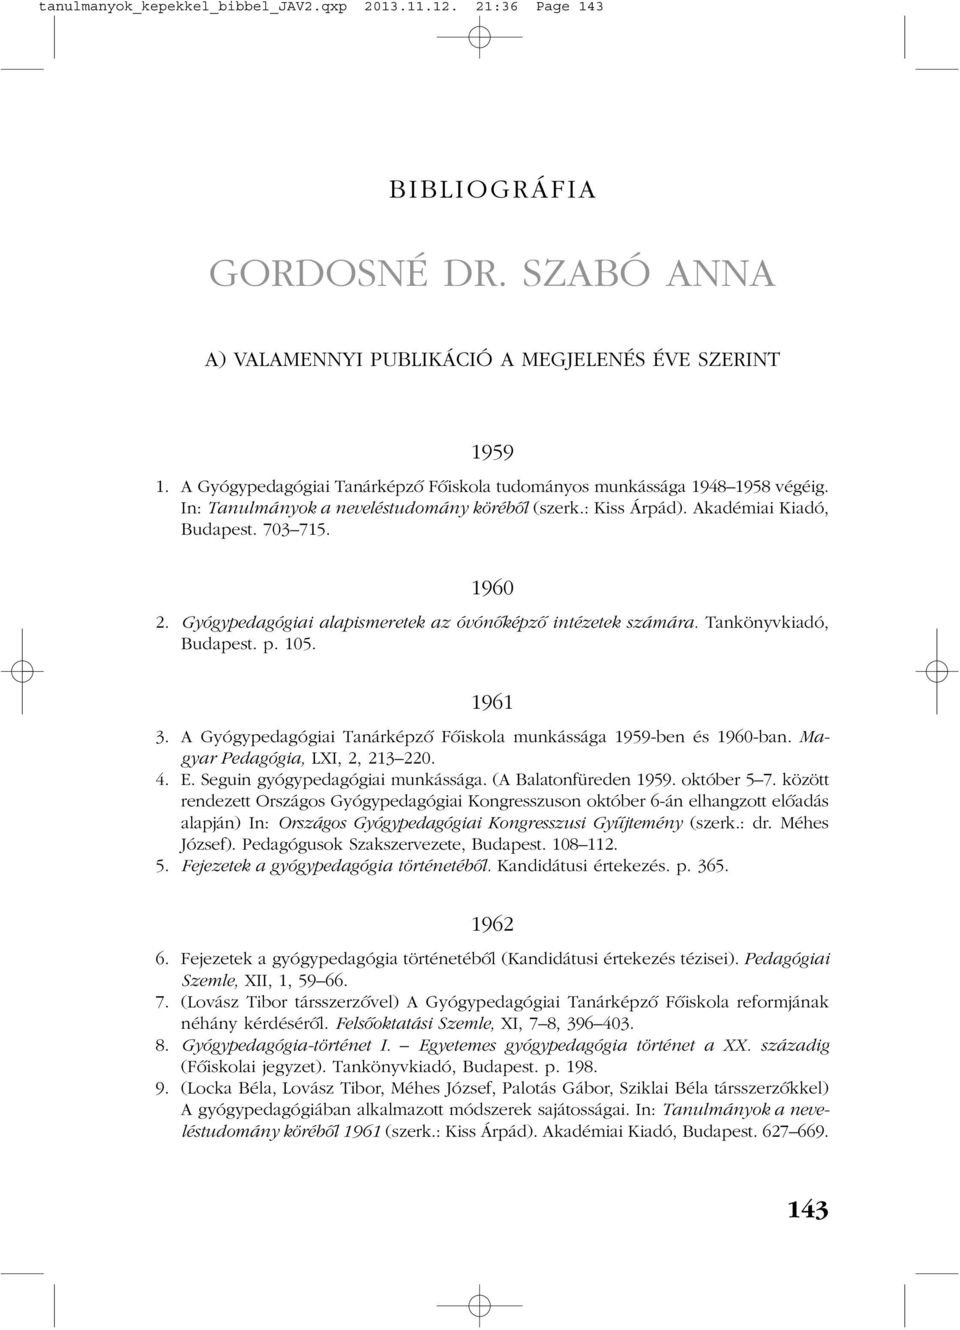 GORDOSNÉ DR. SZABÓ ANNA - PDF Ingyenes letöltés